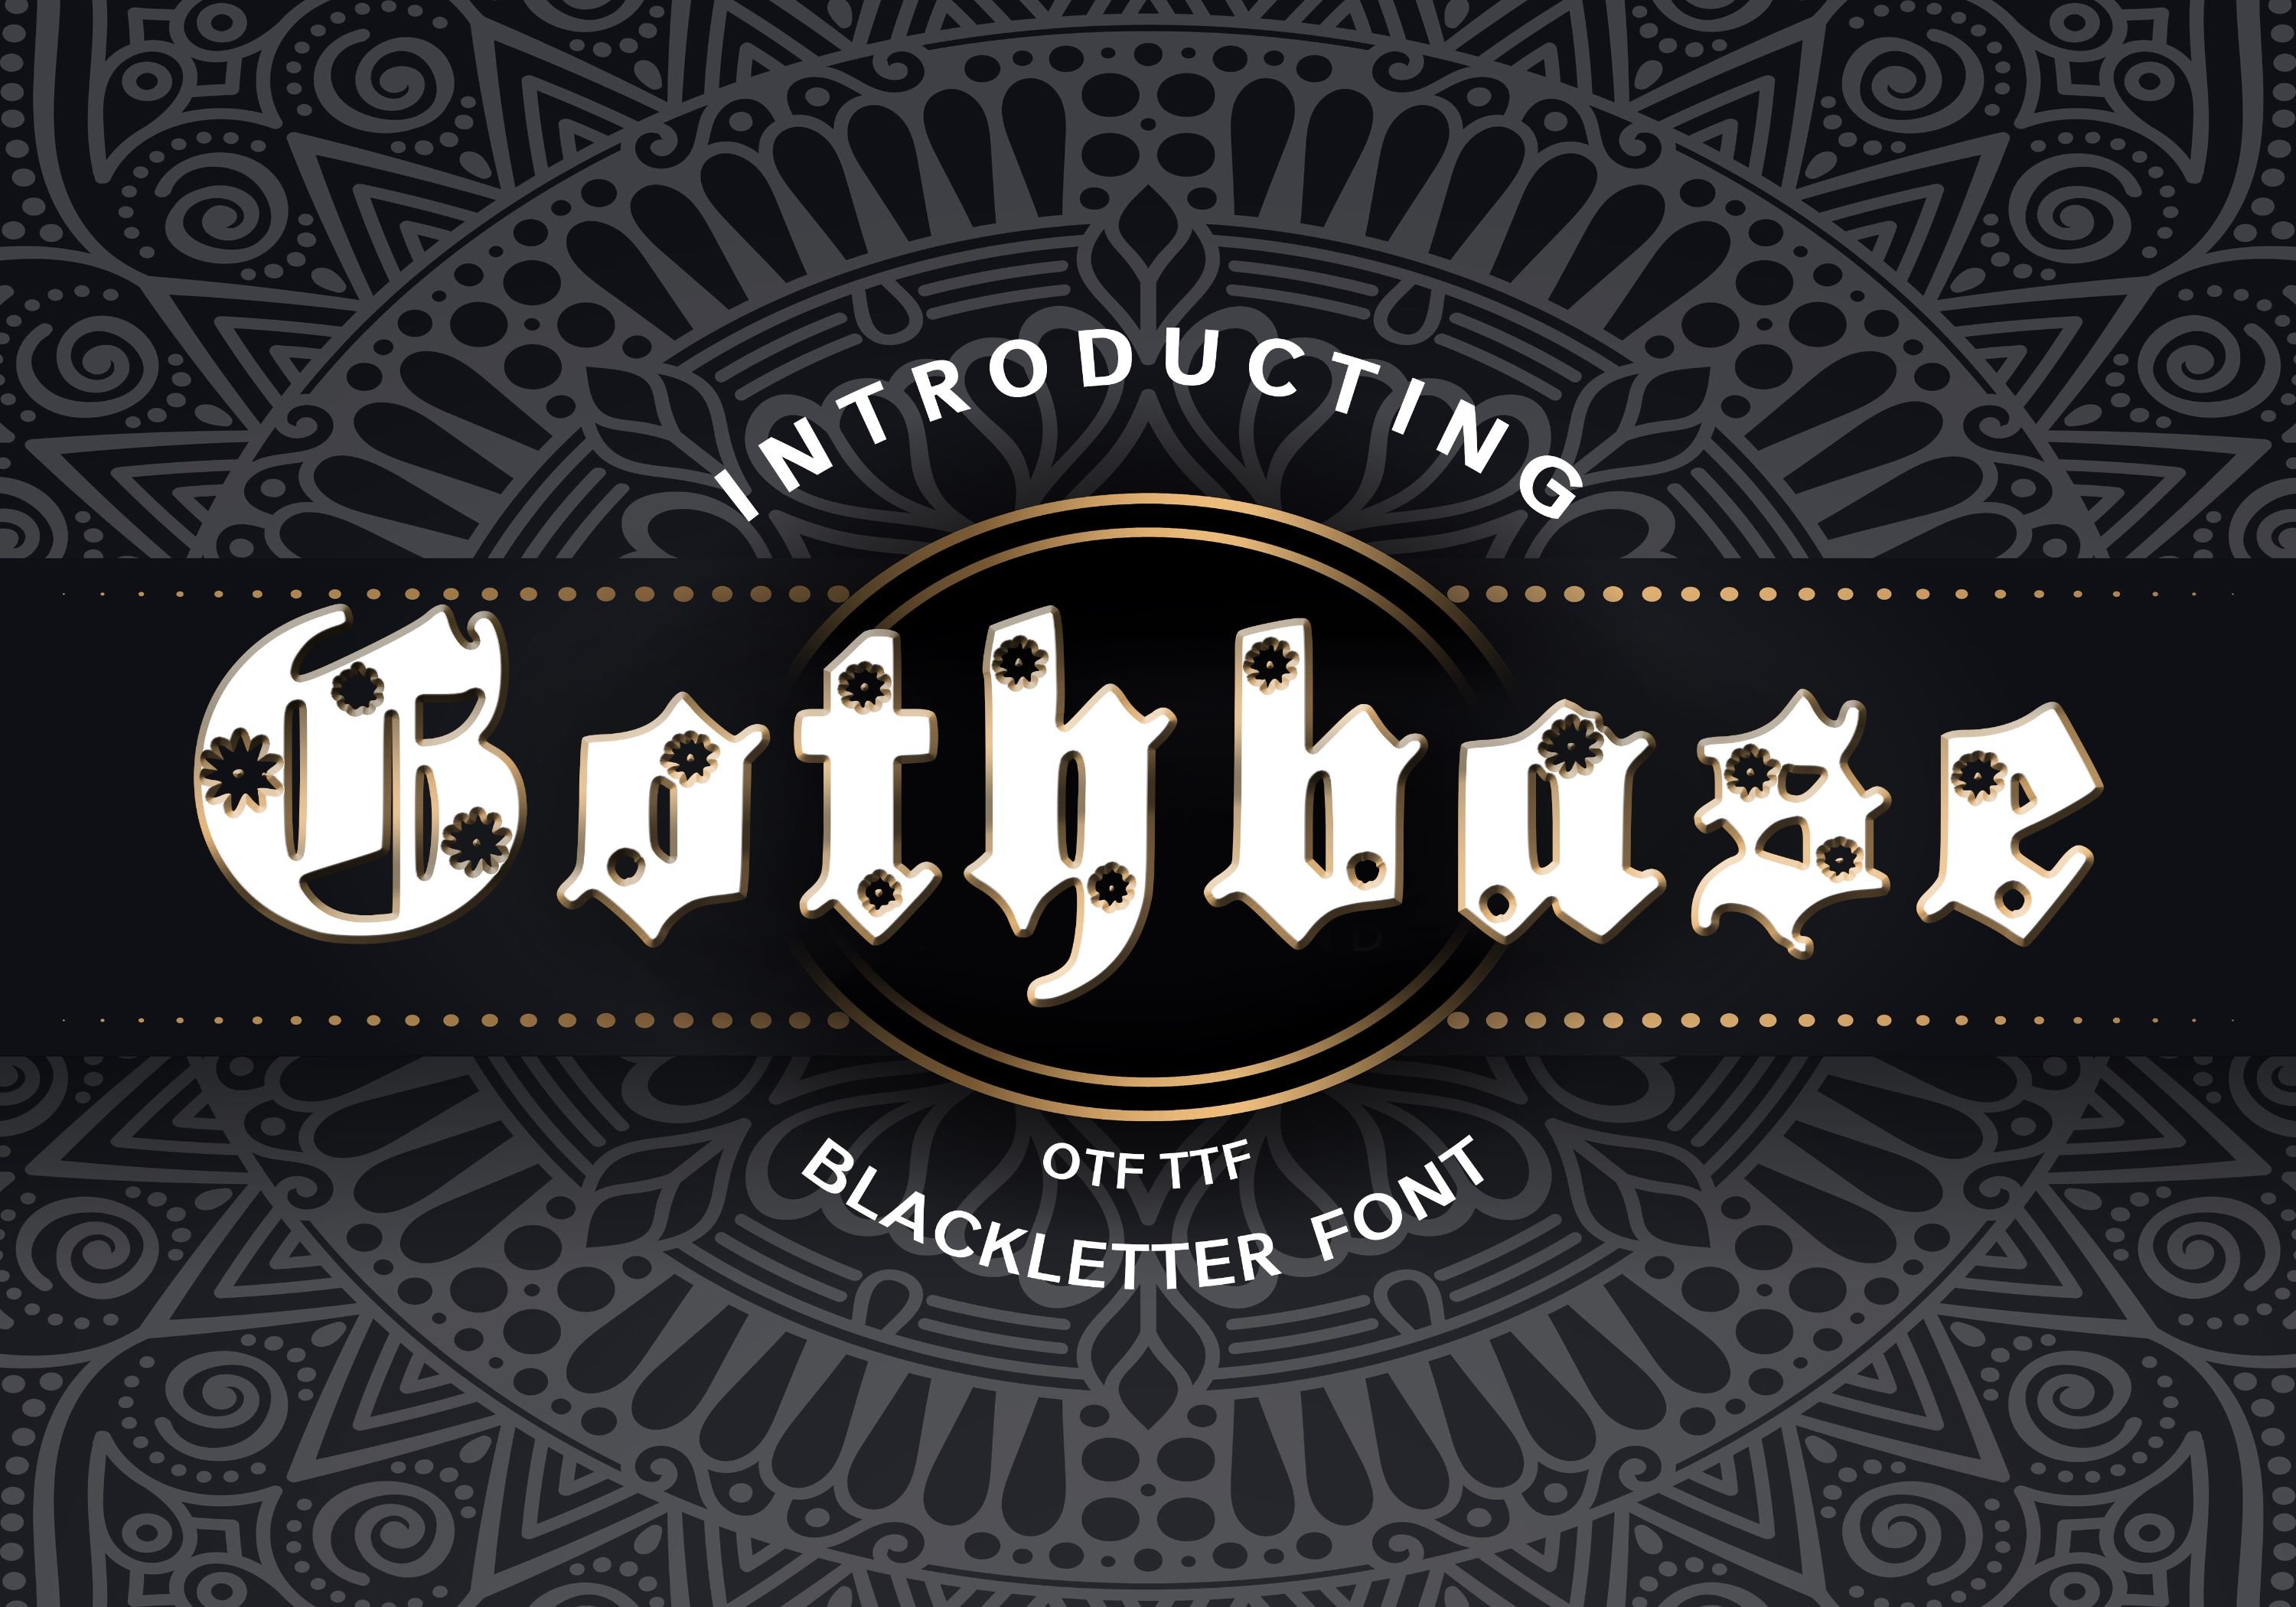 Gothbase Blackletter Font cover image.